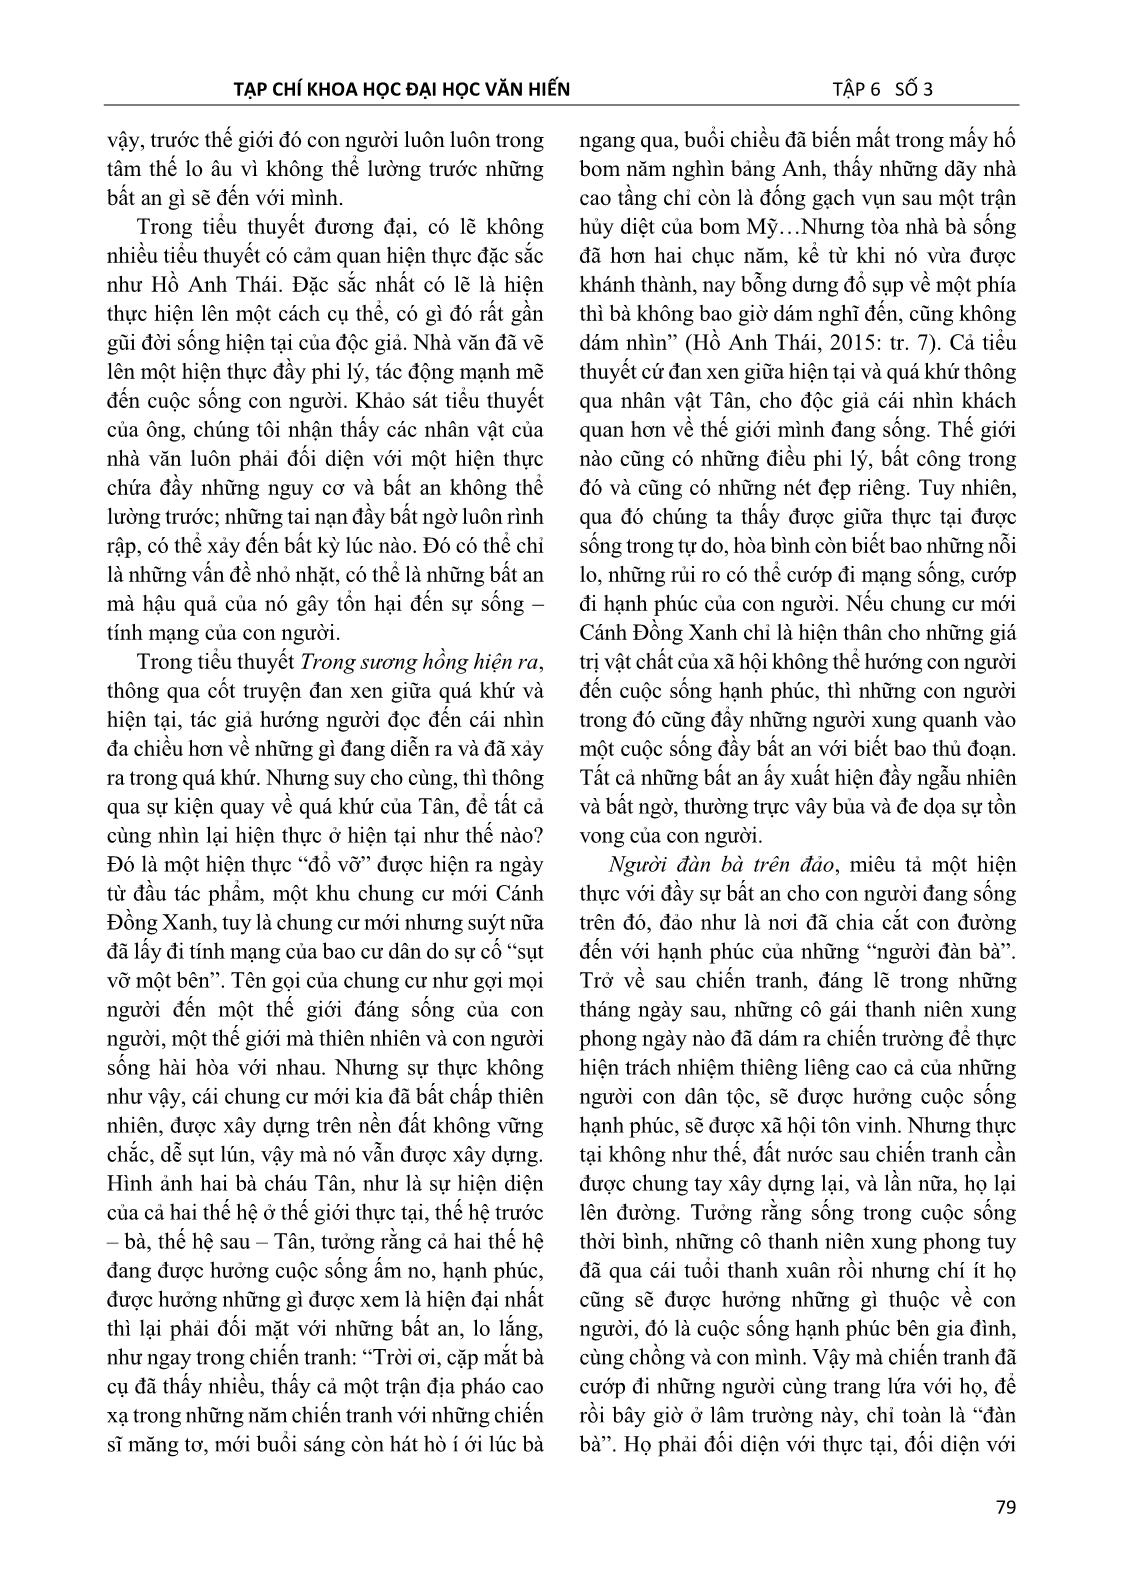 Dấu ấn hiện sinh trong tiểu thuyết Hồ Anh Thái nhìn từ cảm quan hiện thực trang 4